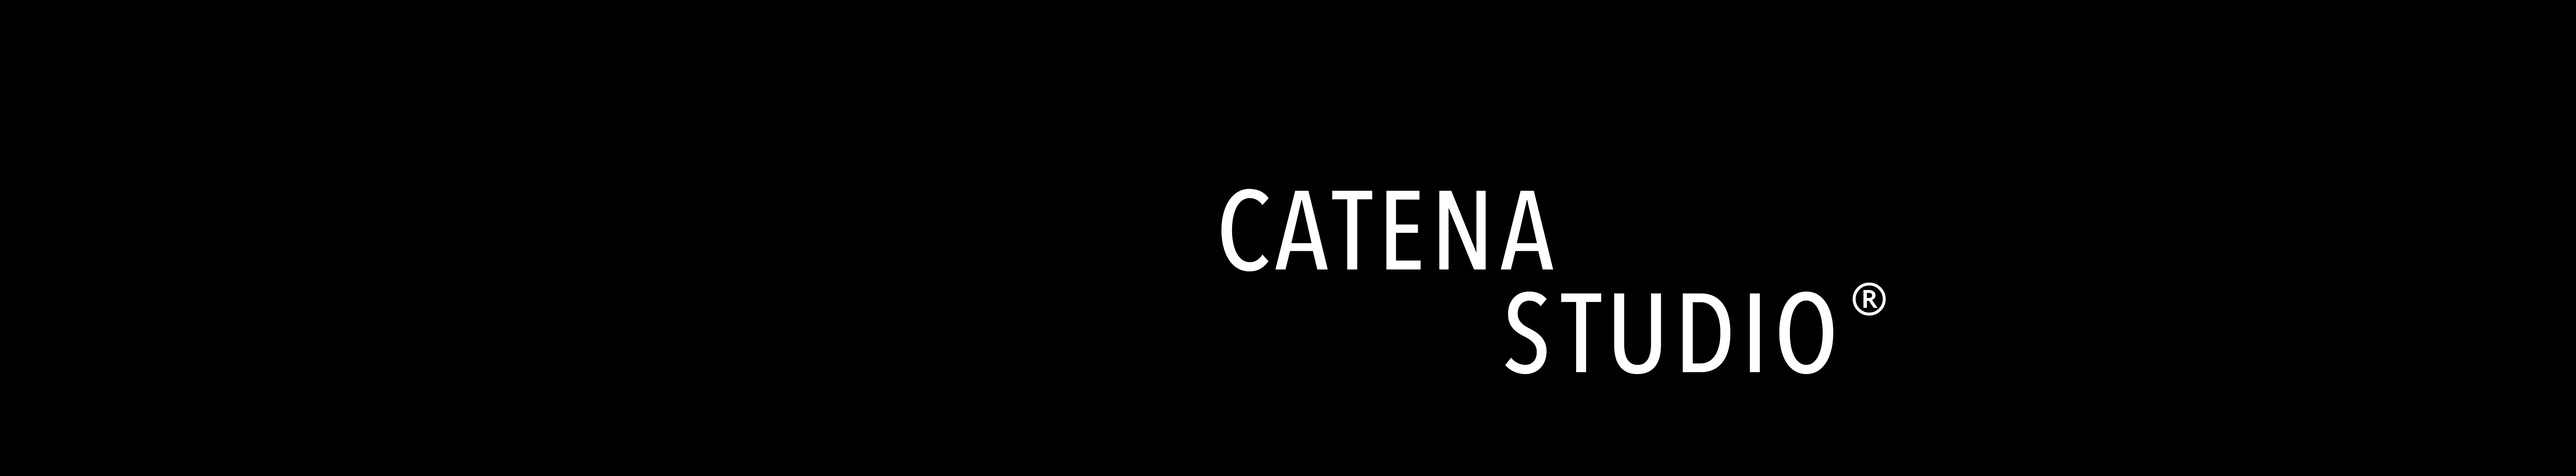 Banner de perfil de Catena Studio